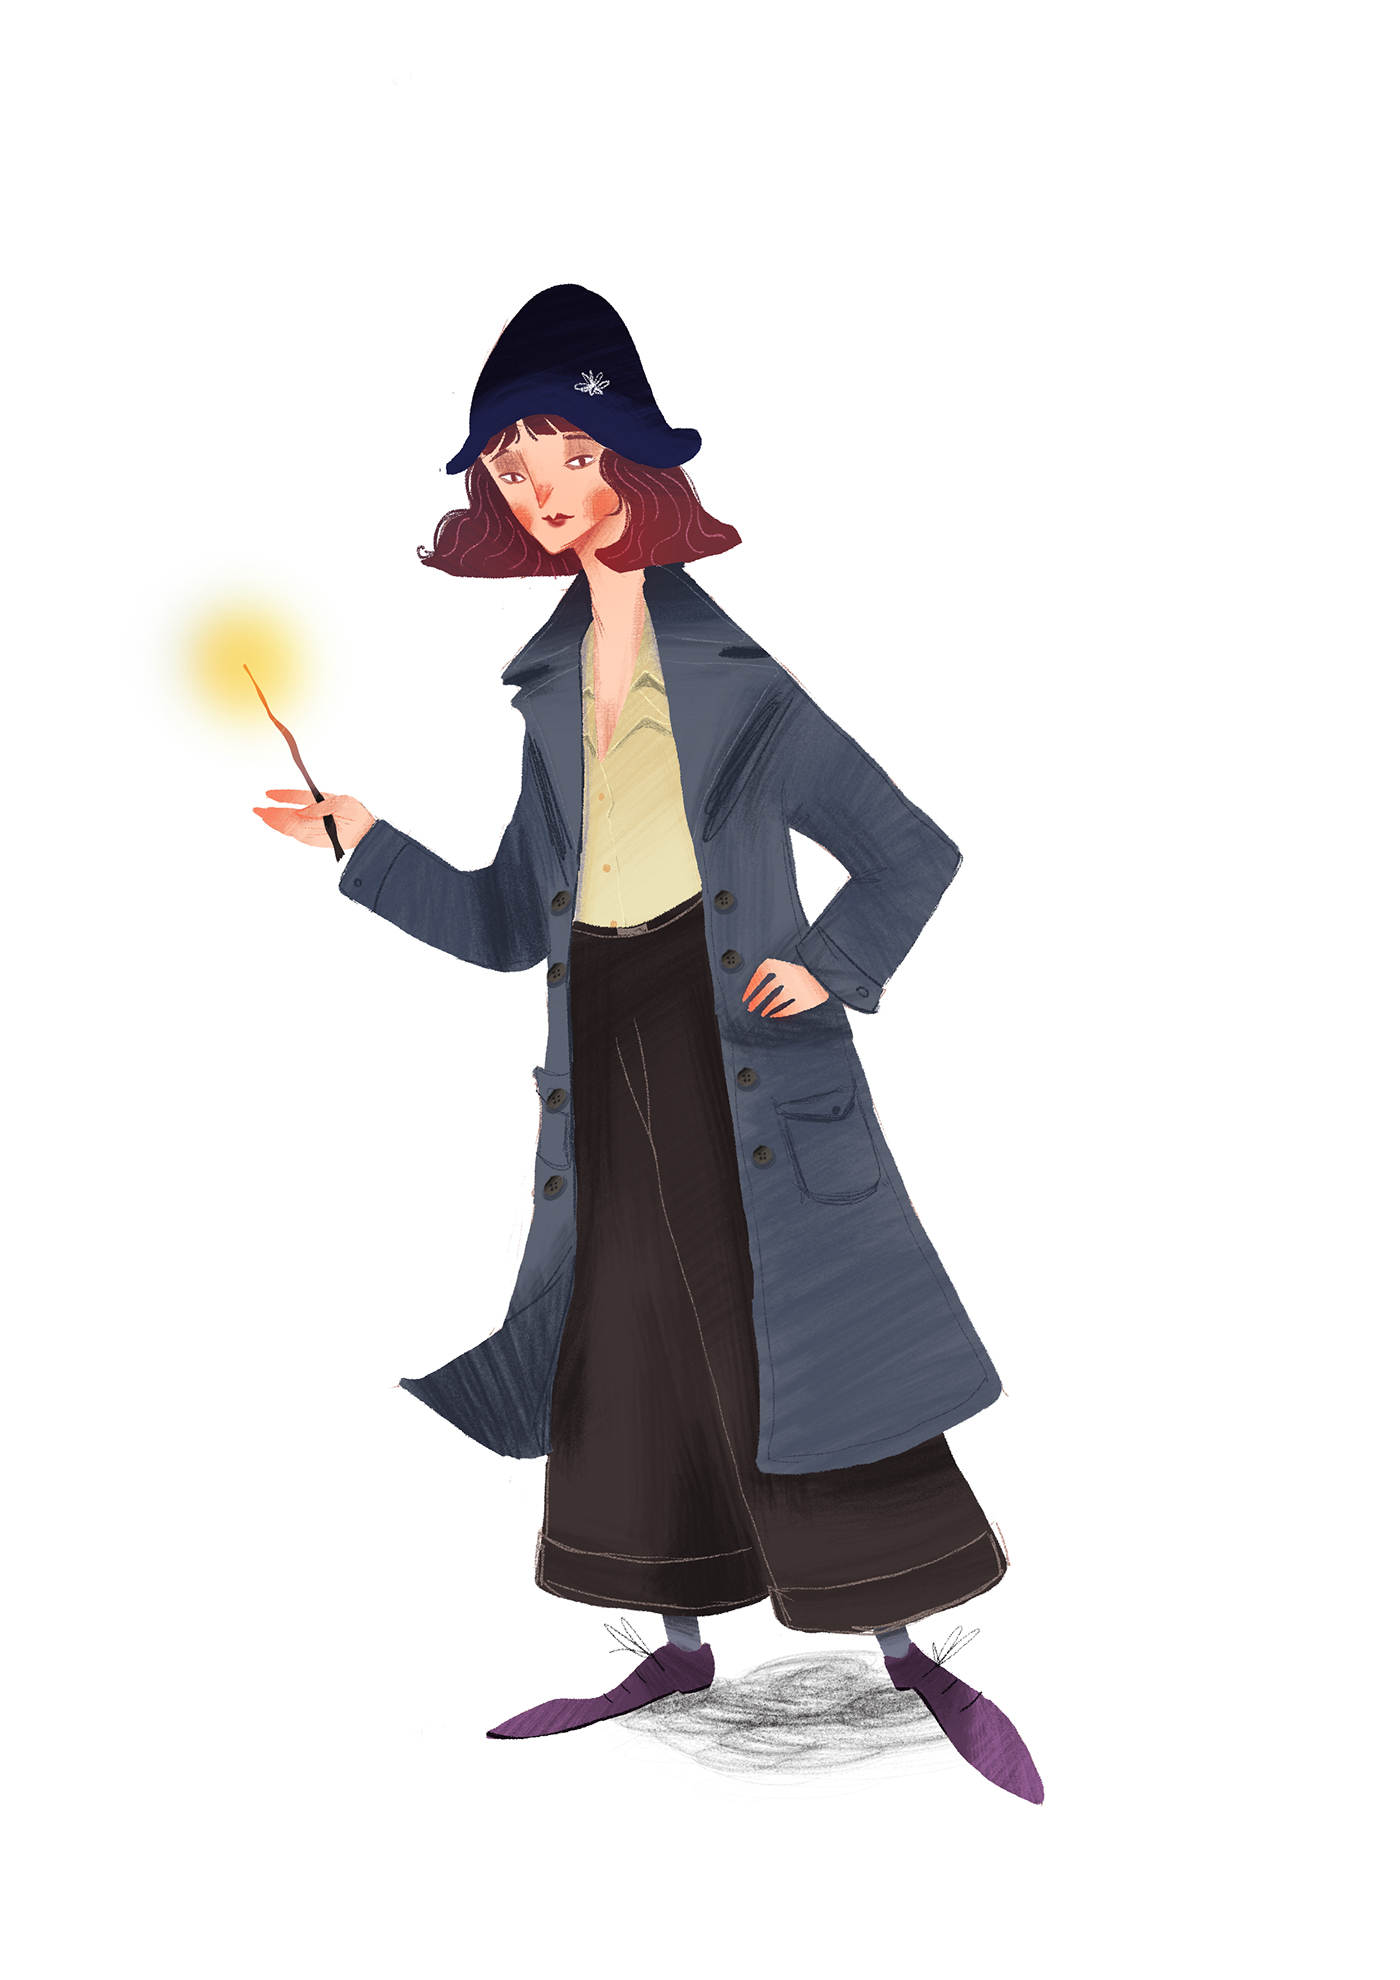 karakter design tasarım digitalart concept harrypotter ILLUSTRATION  woman mage witcher